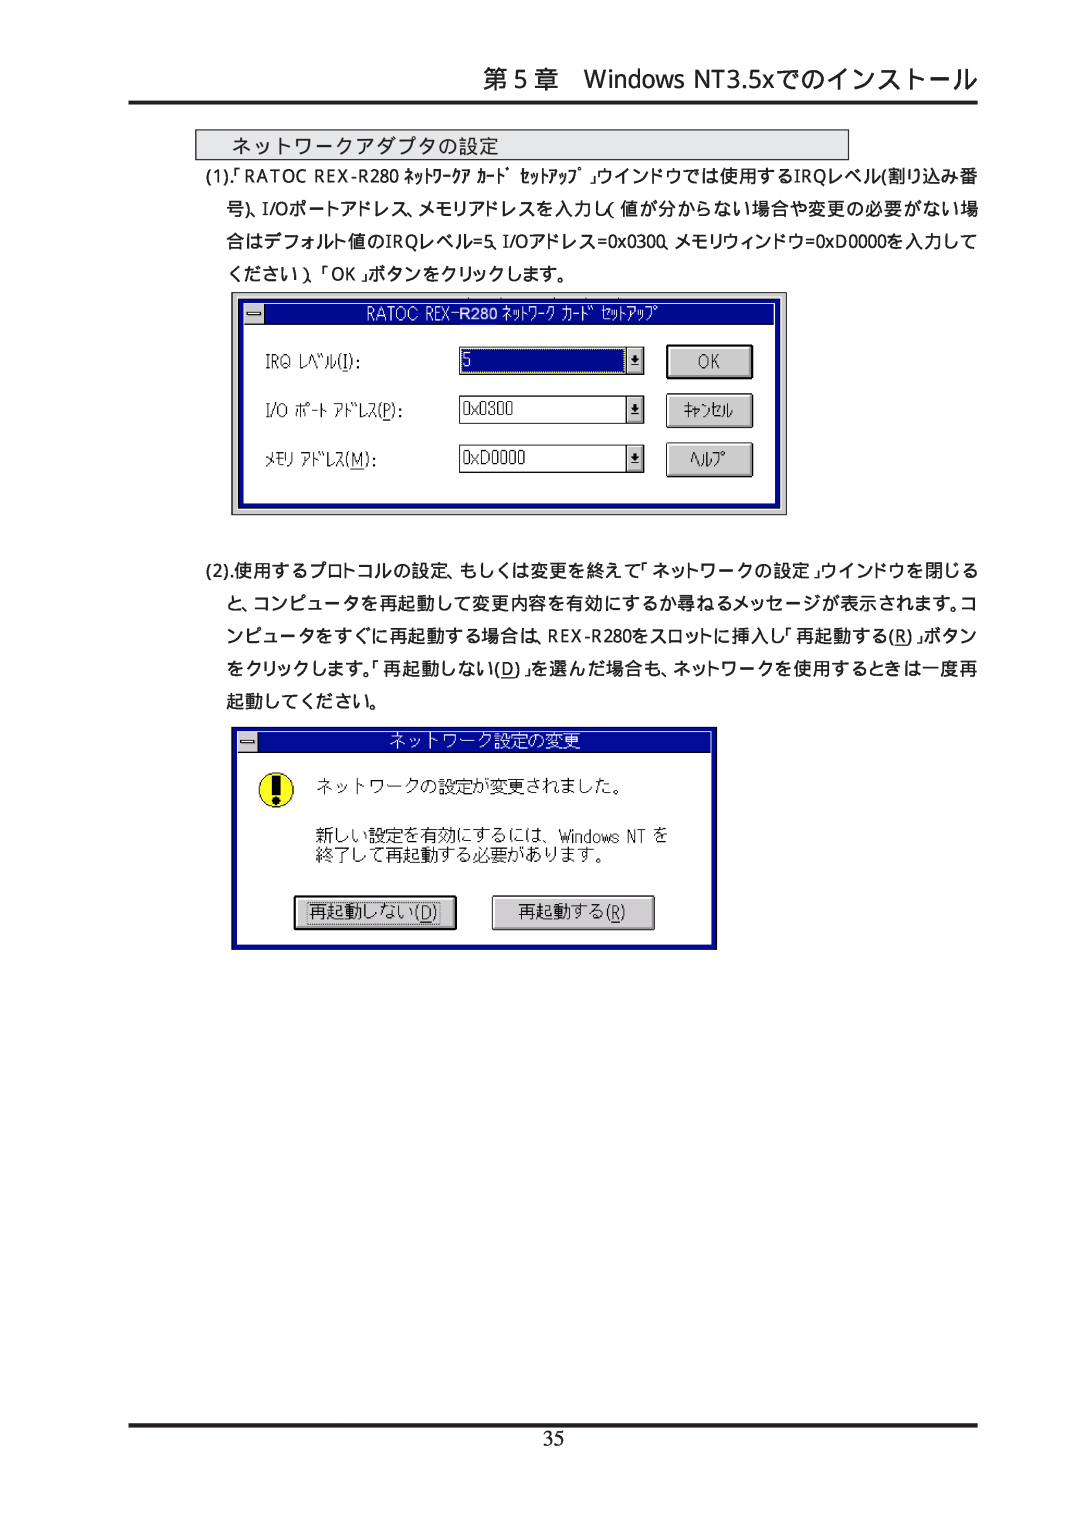 Ratoc Systems REX-R280 manual 第５章 Windows NT3.5xでのインストール, ネットワークアダプタの設定 